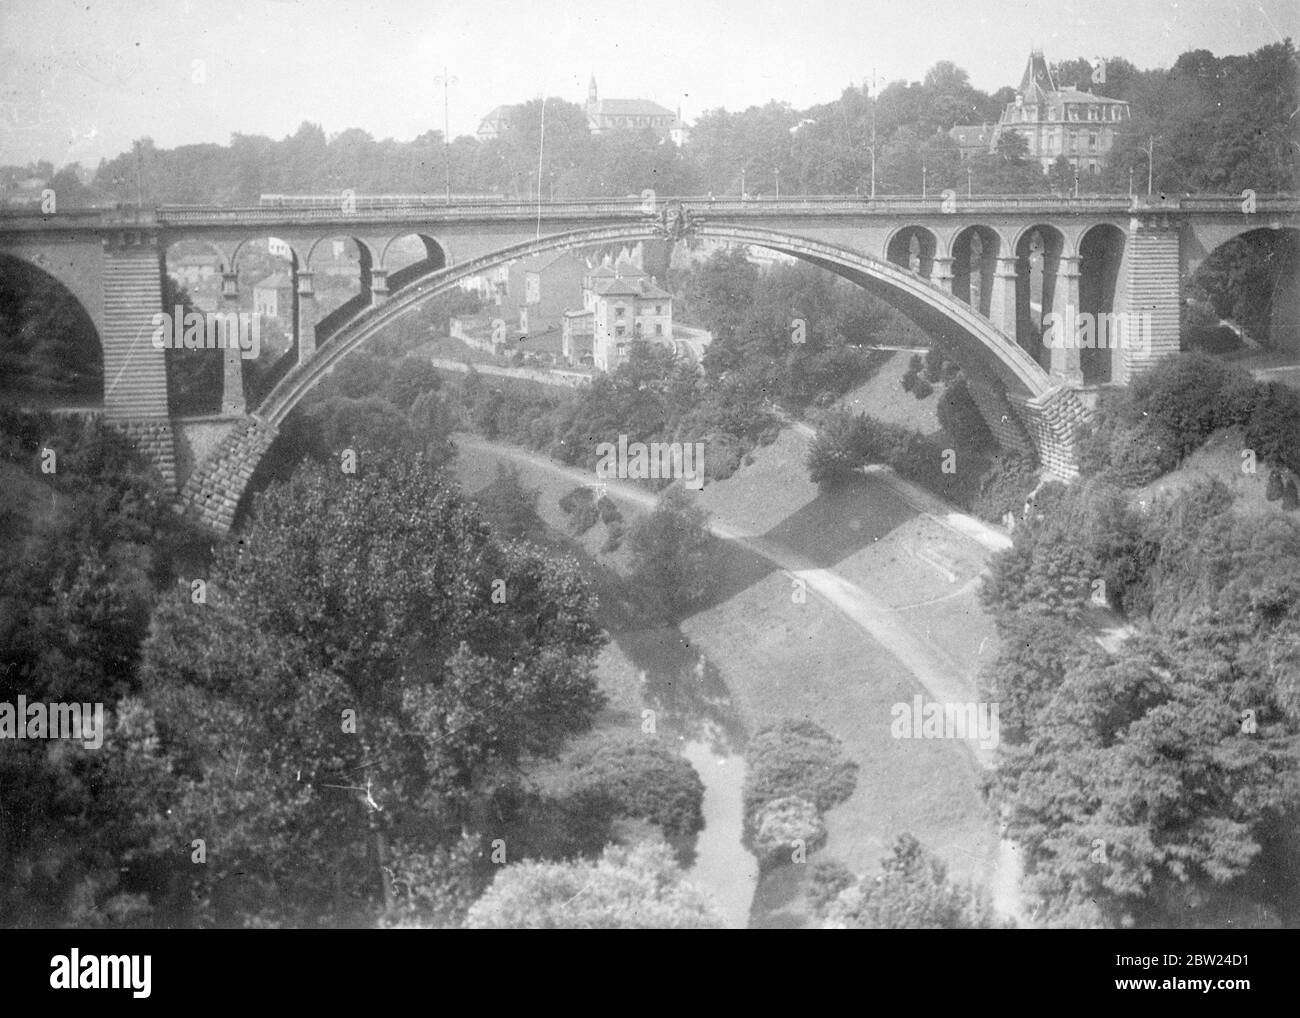 Le pont séparant la partie supérieure de la partie inférieure de la ville de Luxembourg septembre 1938 Banque D'Images